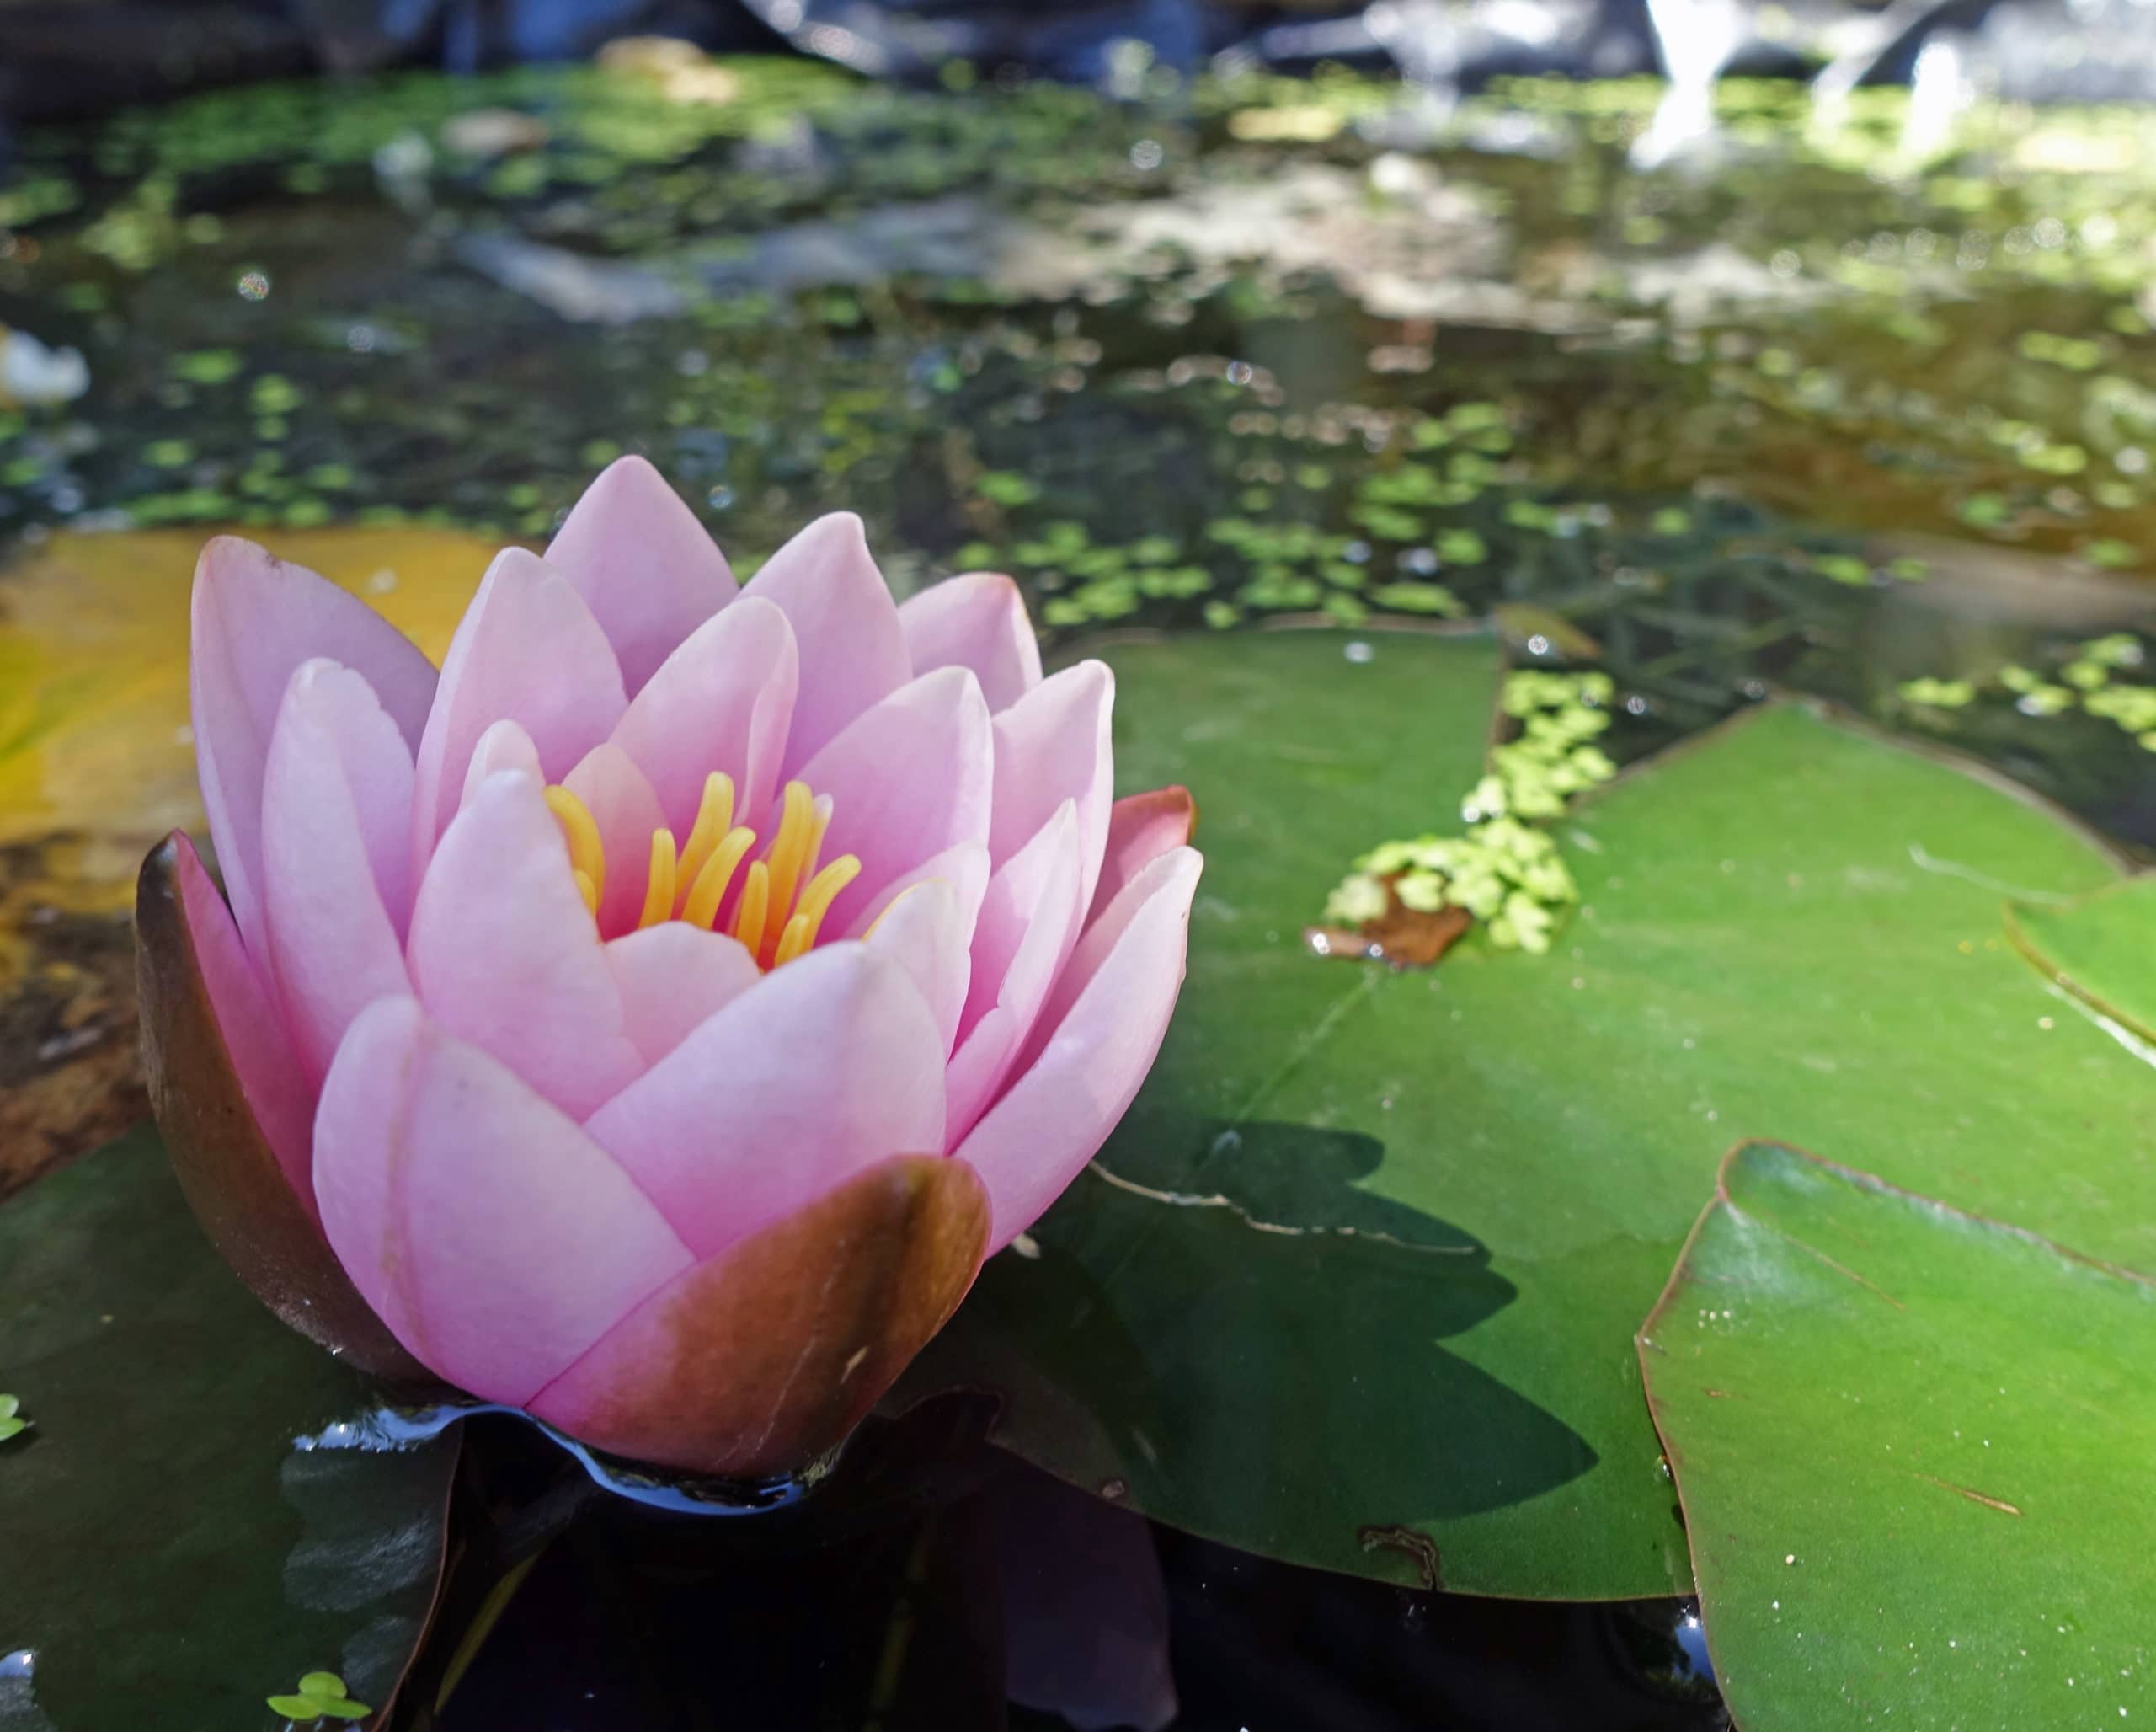 pic of lotus plant - کامل (مولیزی)